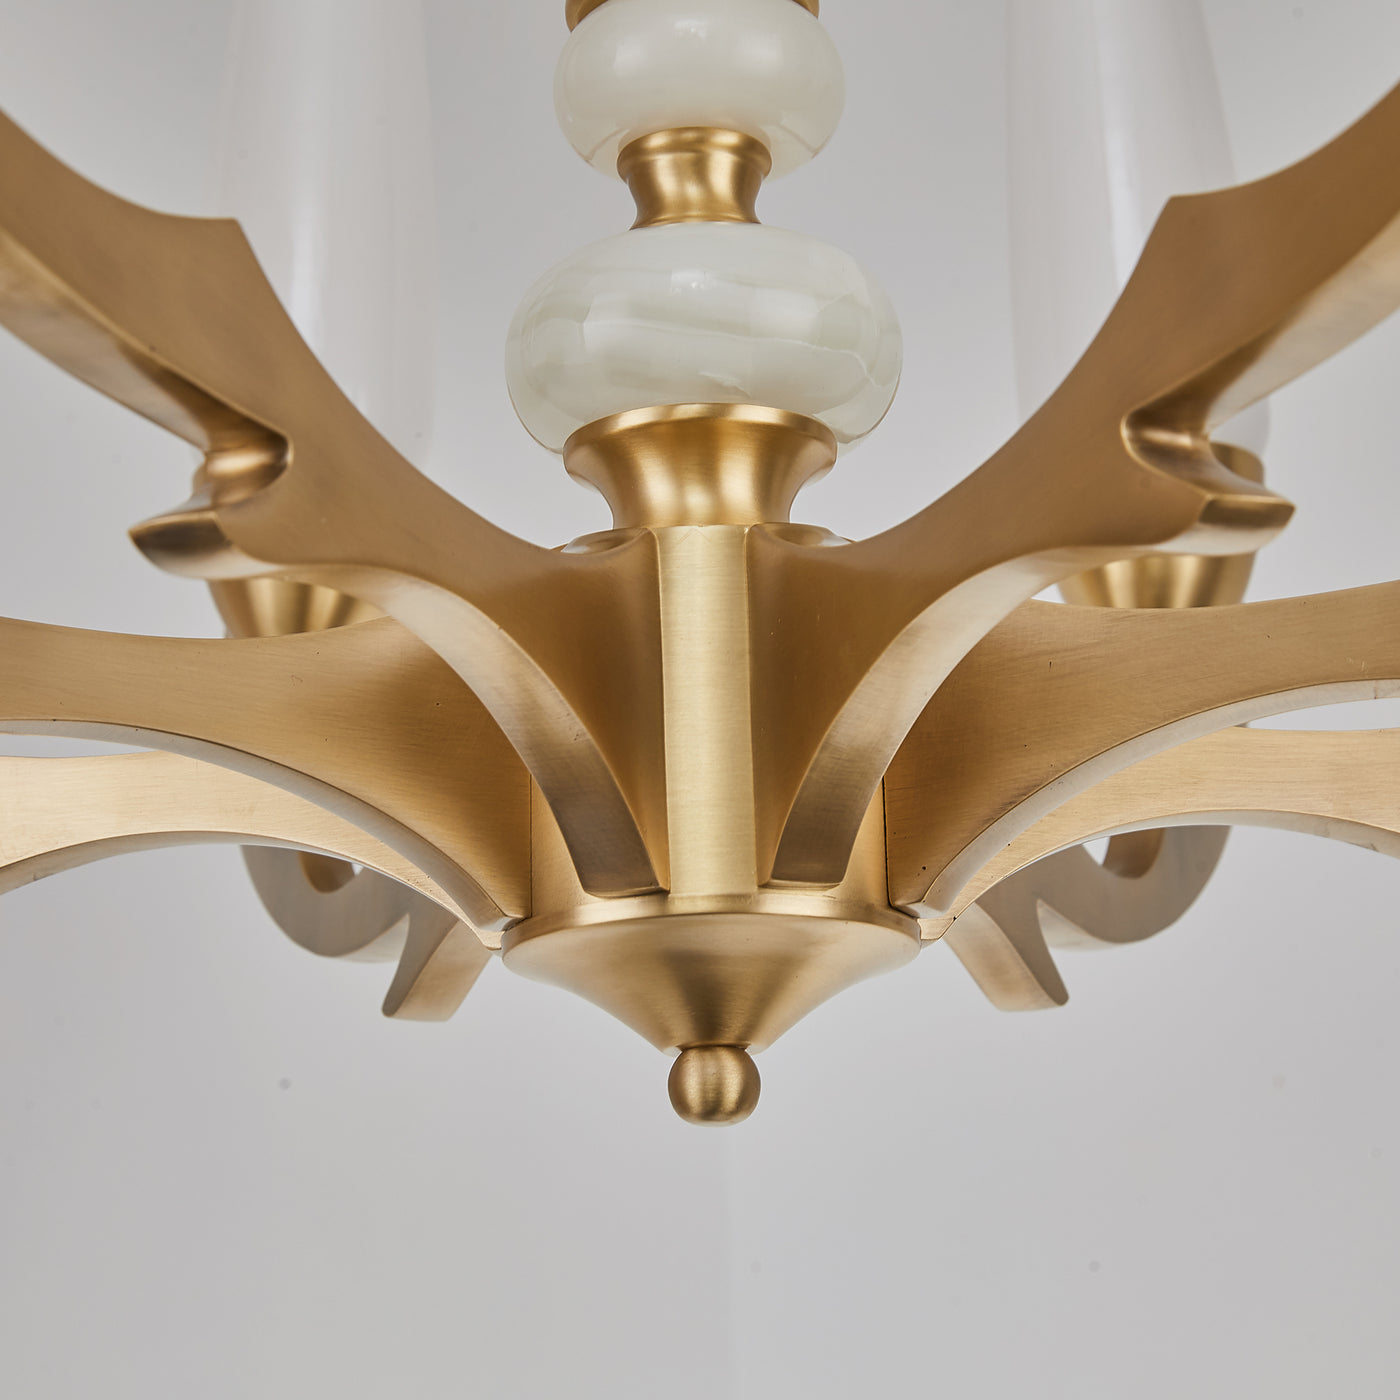 Creative three layer golden chandelier